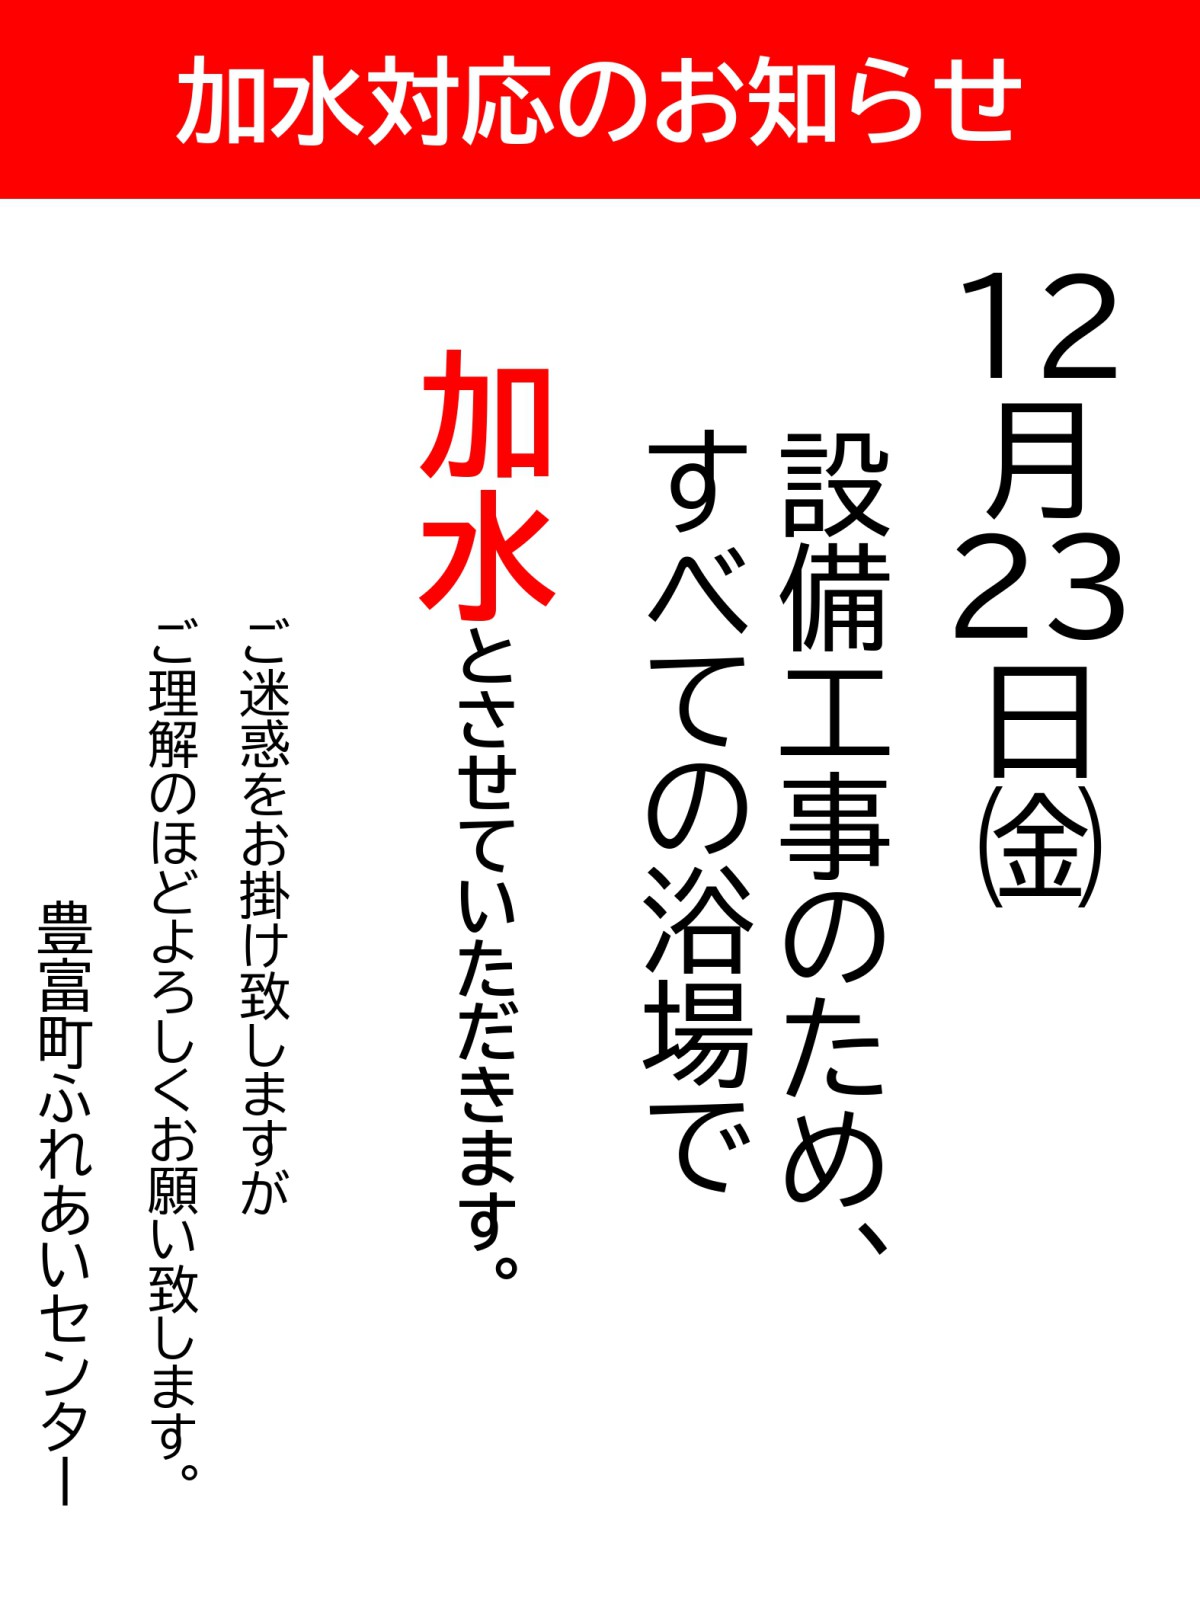 【ふれあいセンター】12/23㈮ 加水対応のお知らせ【予告】